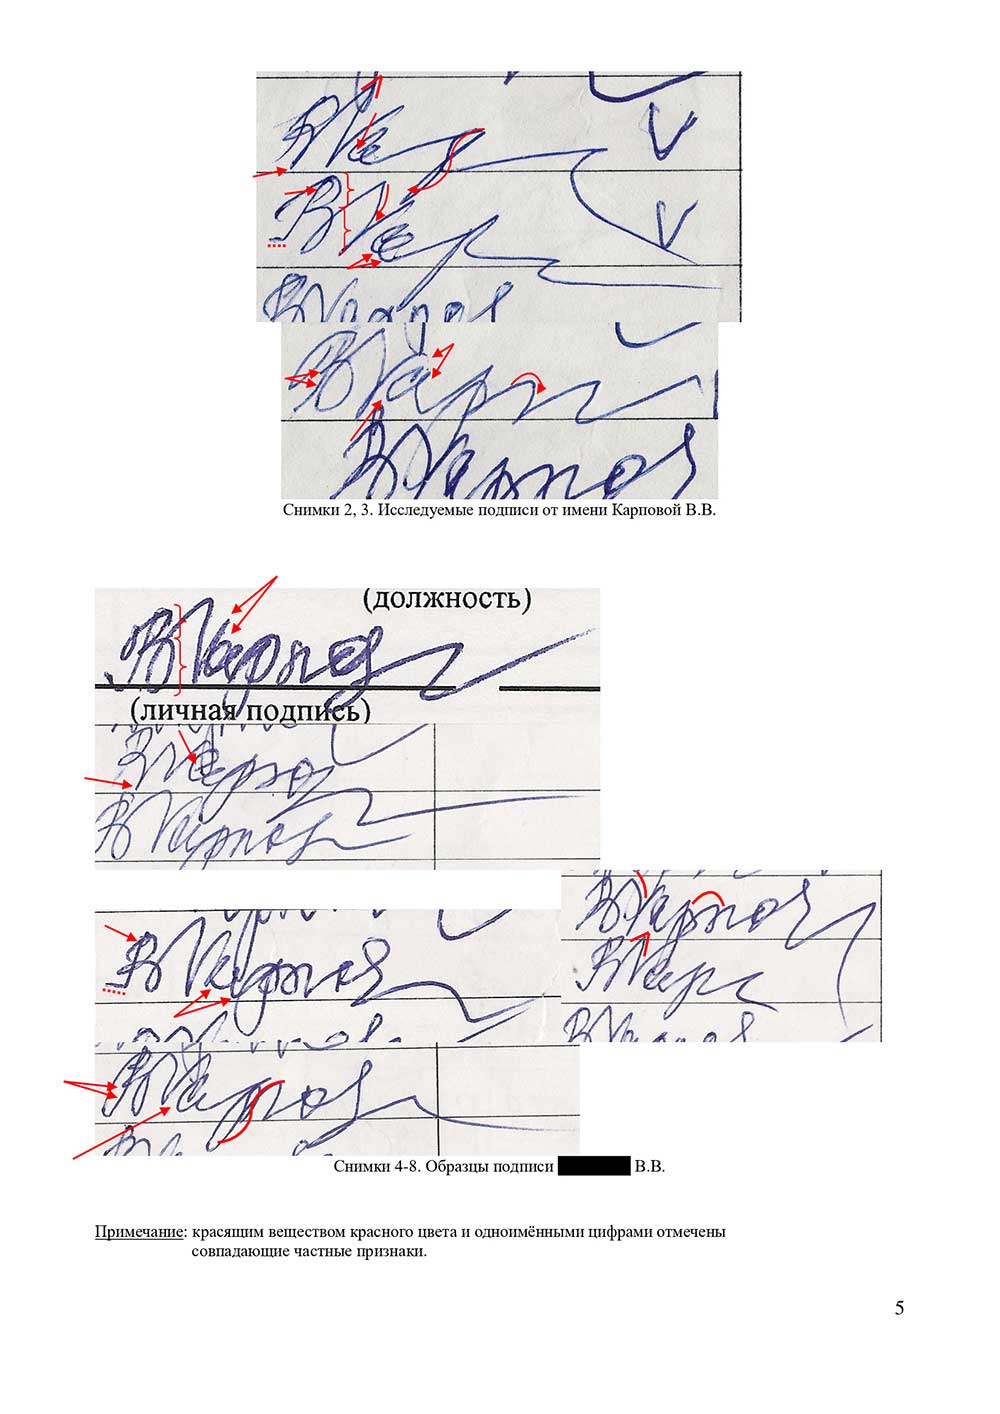 Судебная и досудебная почерковедческая экспертиза документов. Графологическая экспертиза почерка, подписи в Красноярске